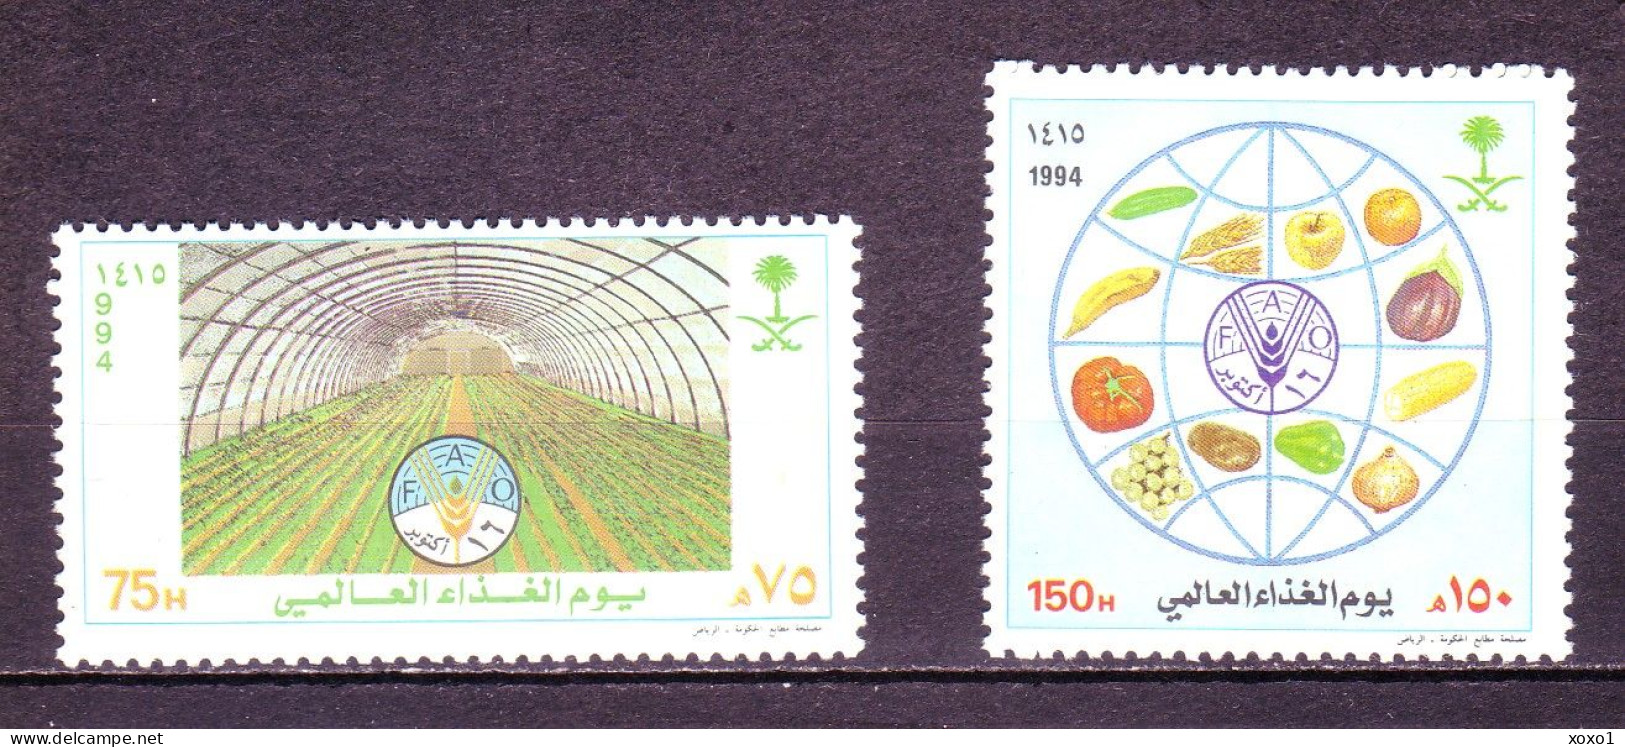 Saudi Arabia 1994 MiNr. 1201 - 1202 Saudi-Arabien Food Vegetables Cereals Fruits FAO Emblem 2v MNH** 4,60 € - Arabia Saudita